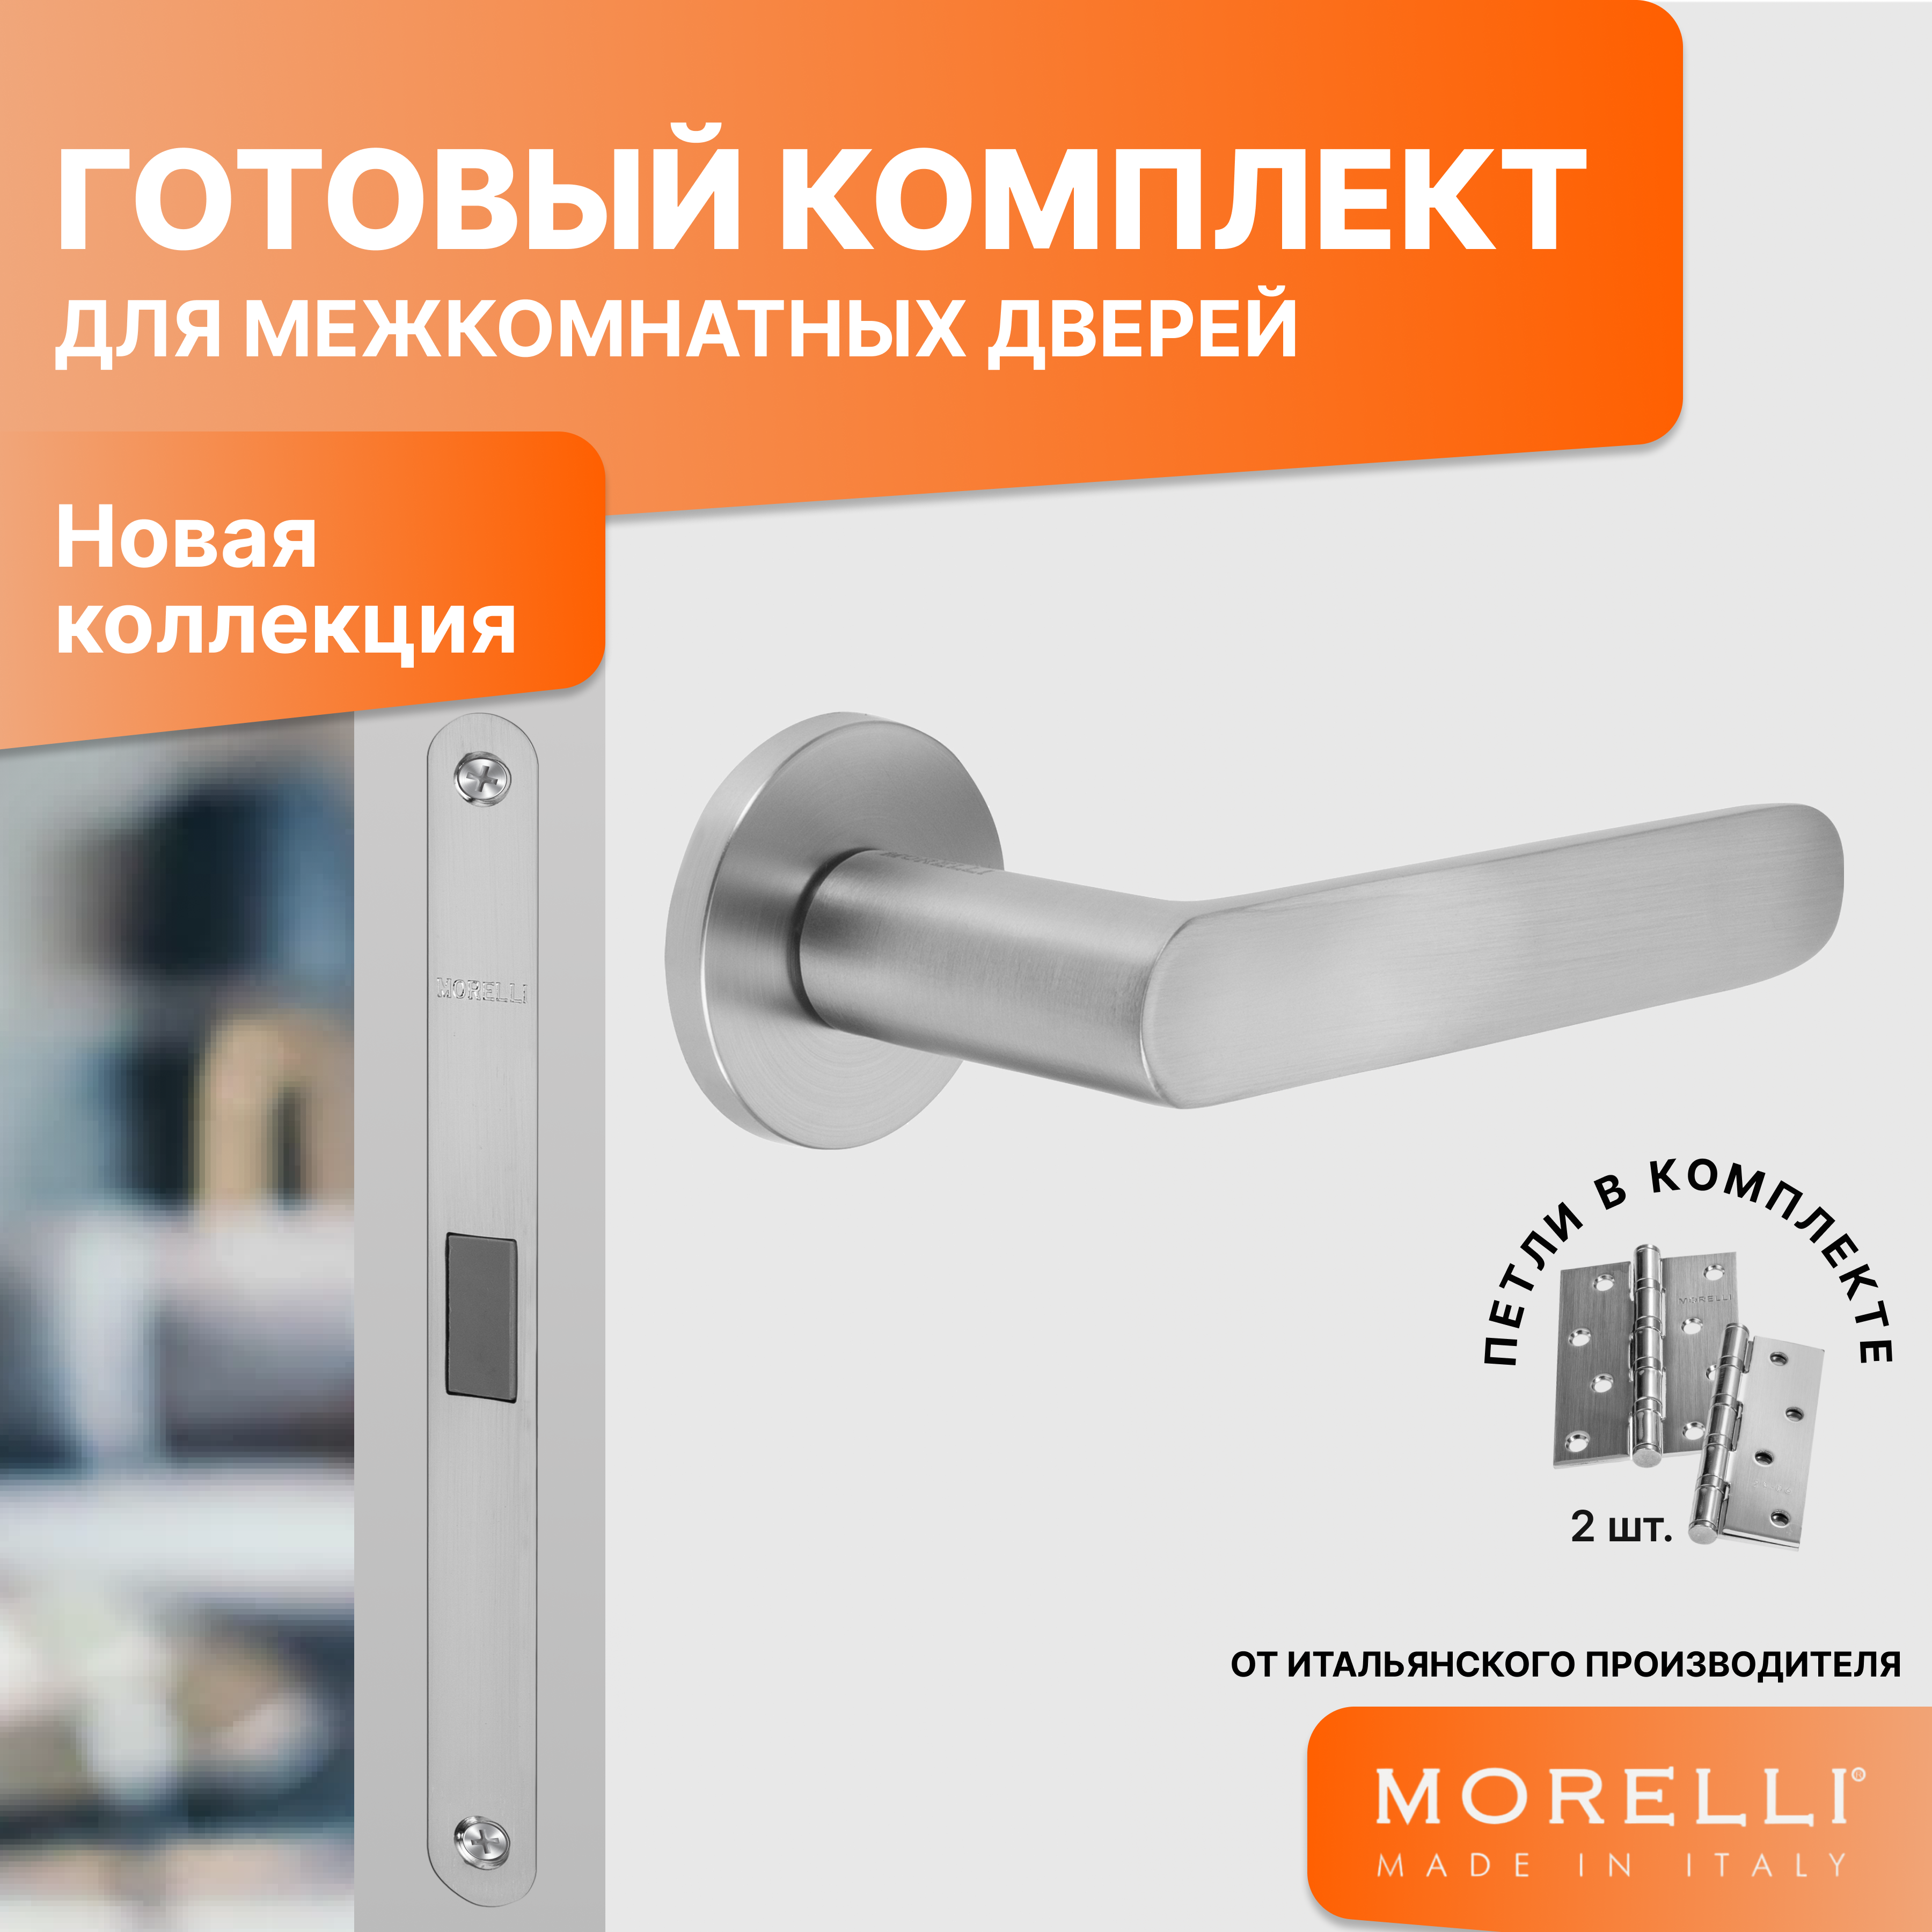 Комплект для двери MORELLI ручки MH 59 R6 MSC + магнитный замок + врезные петли защёлка сантехническая morelli m1895 магнитная матовый хром